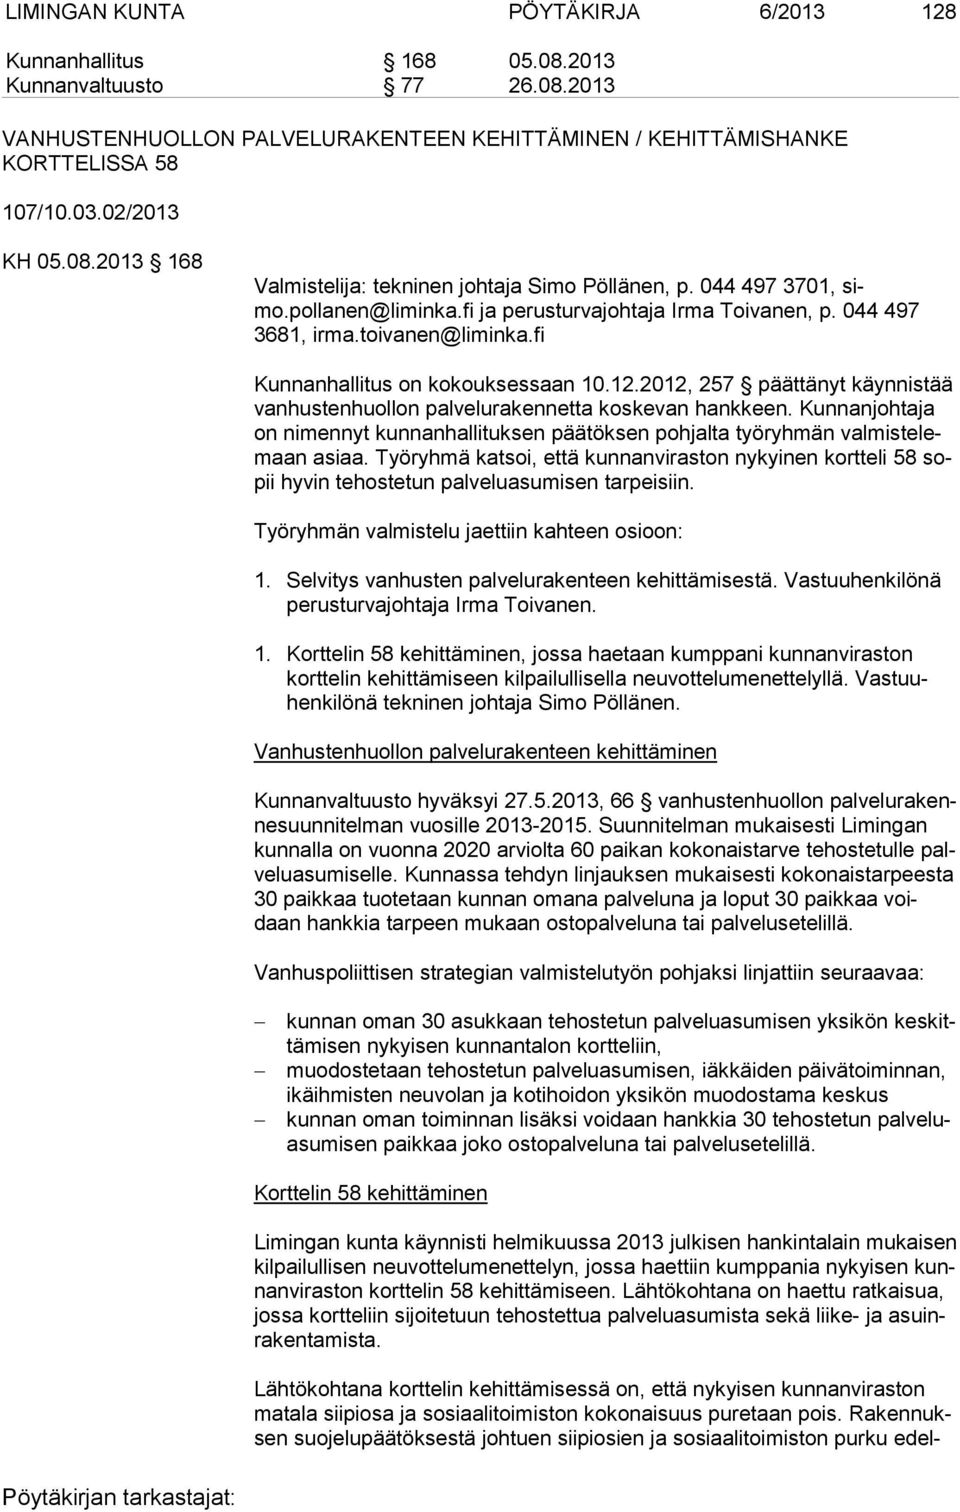 fi Kunnanhallitus on kokouksessaan 10.12.2012, 257 päättänyt käynnistää van hus ten huol lon palvelurakennetta koskevan hankkeen.